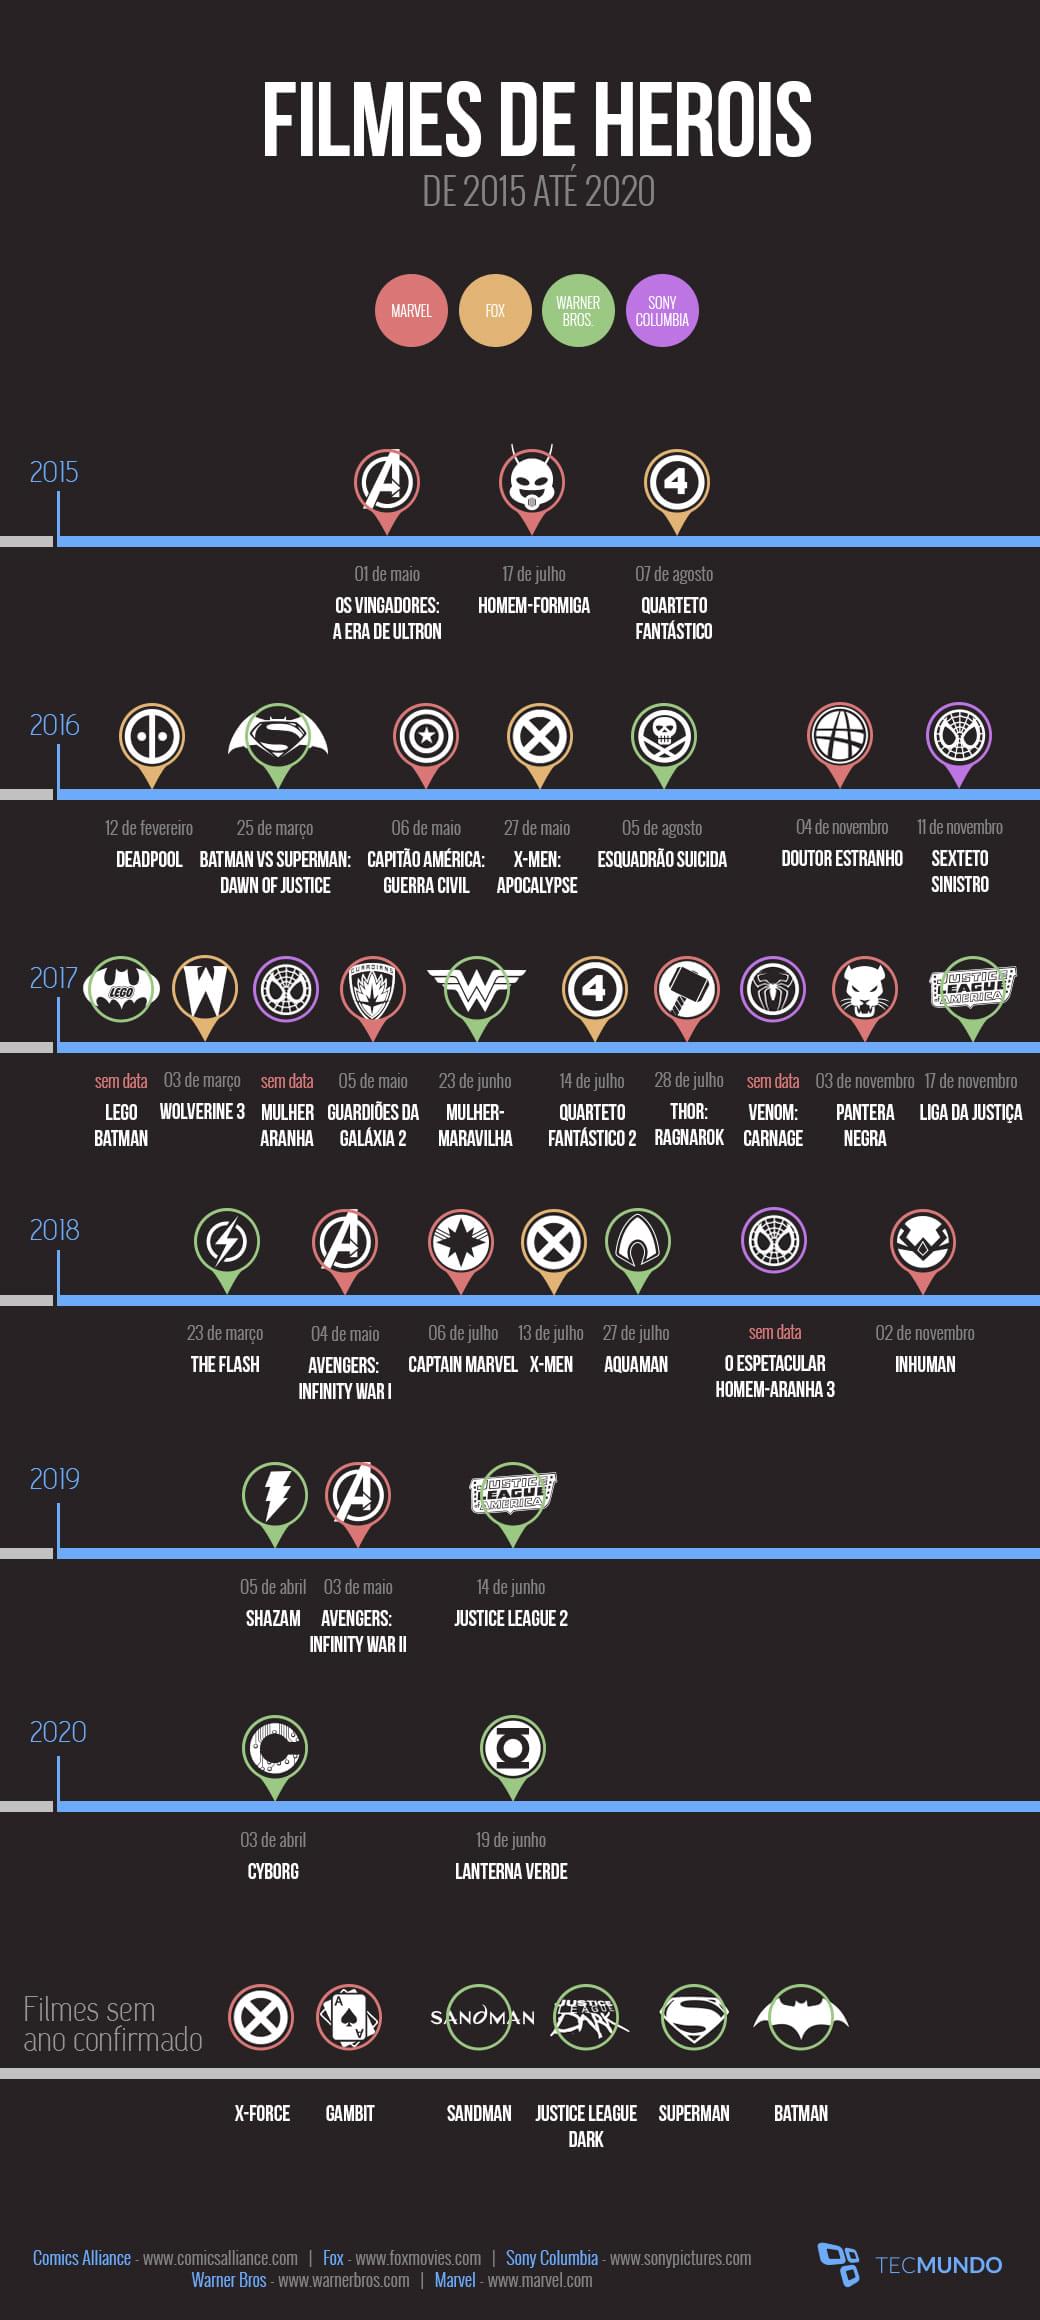 Todos os filmes de super-heróis que estreiam nos cinemas até 2020